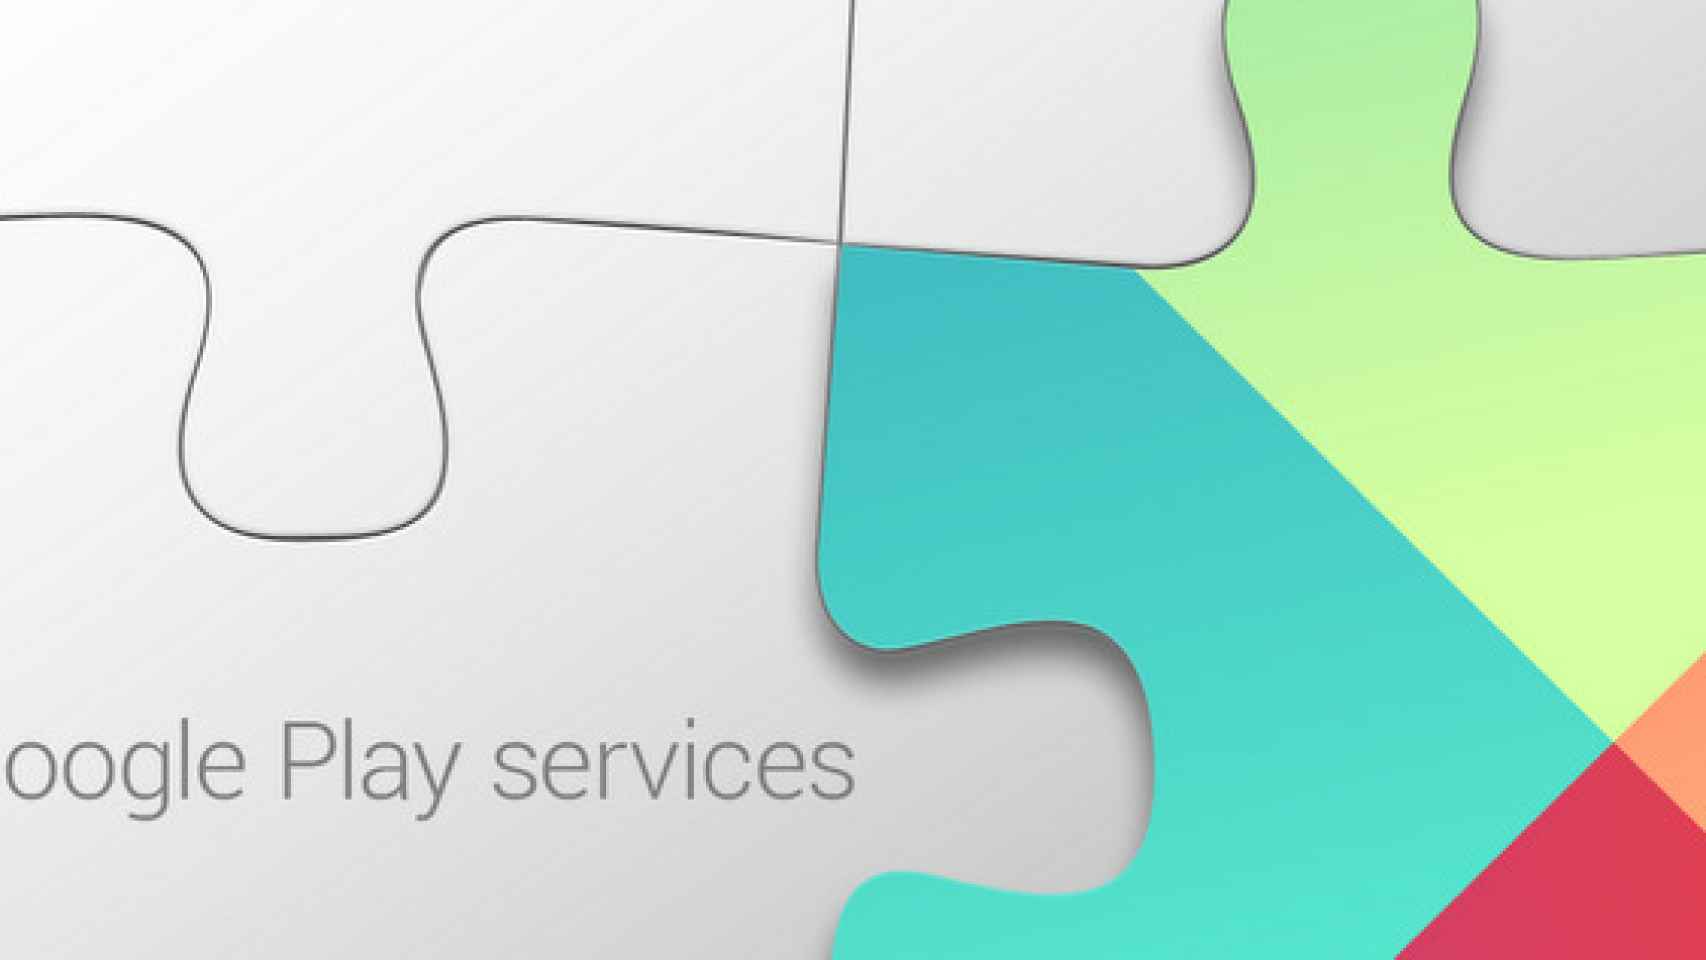 Descarga e instala el nuevo Google Play Services 4.2. Play Games redefinido, API de Cast, mejoras en la autoidentificación y más